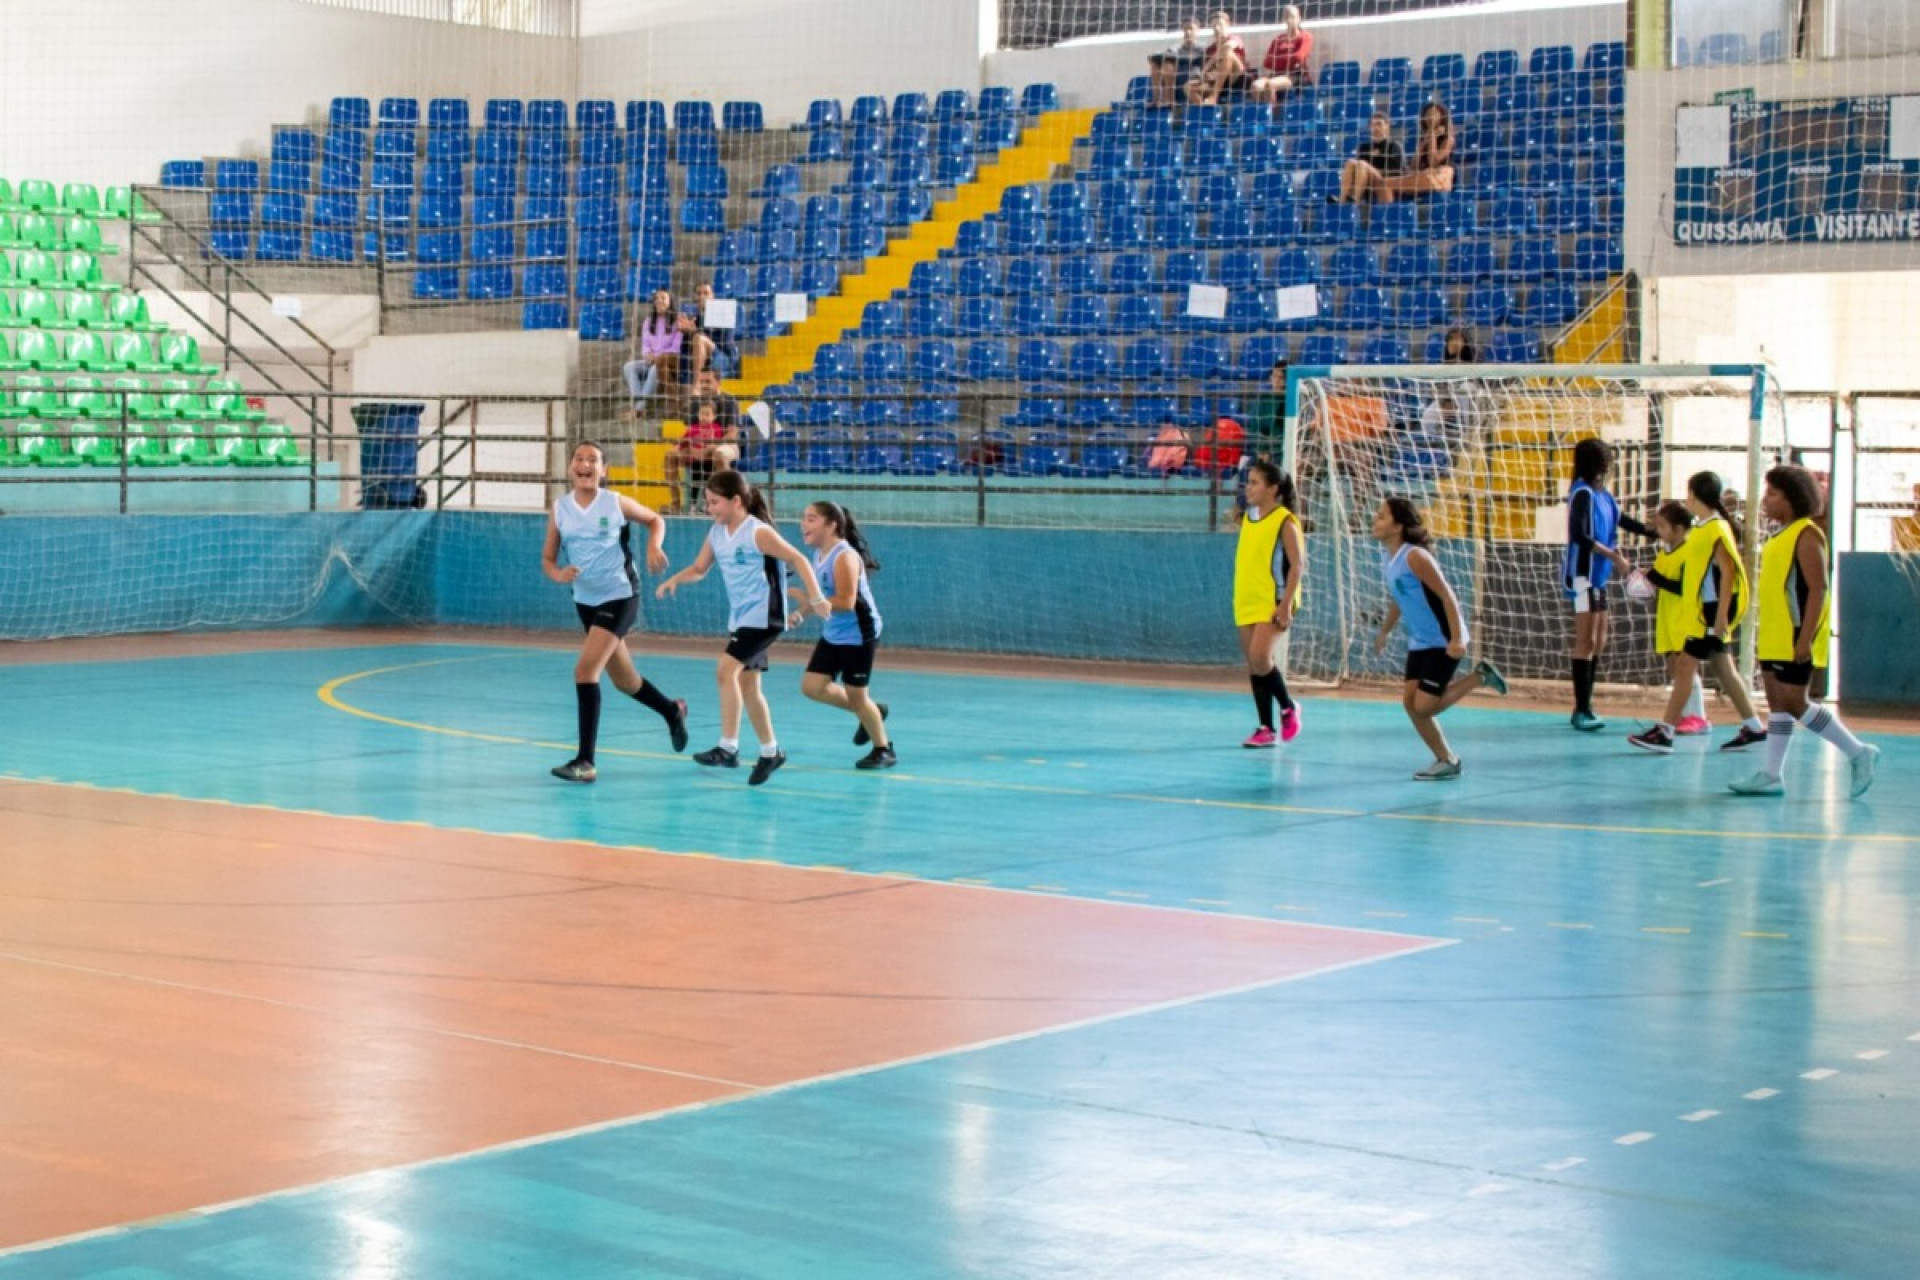  Futebol feminino ganha destaque em Quissamã com apoio da prefeitura em integração de futsal - Foto: Divulgação